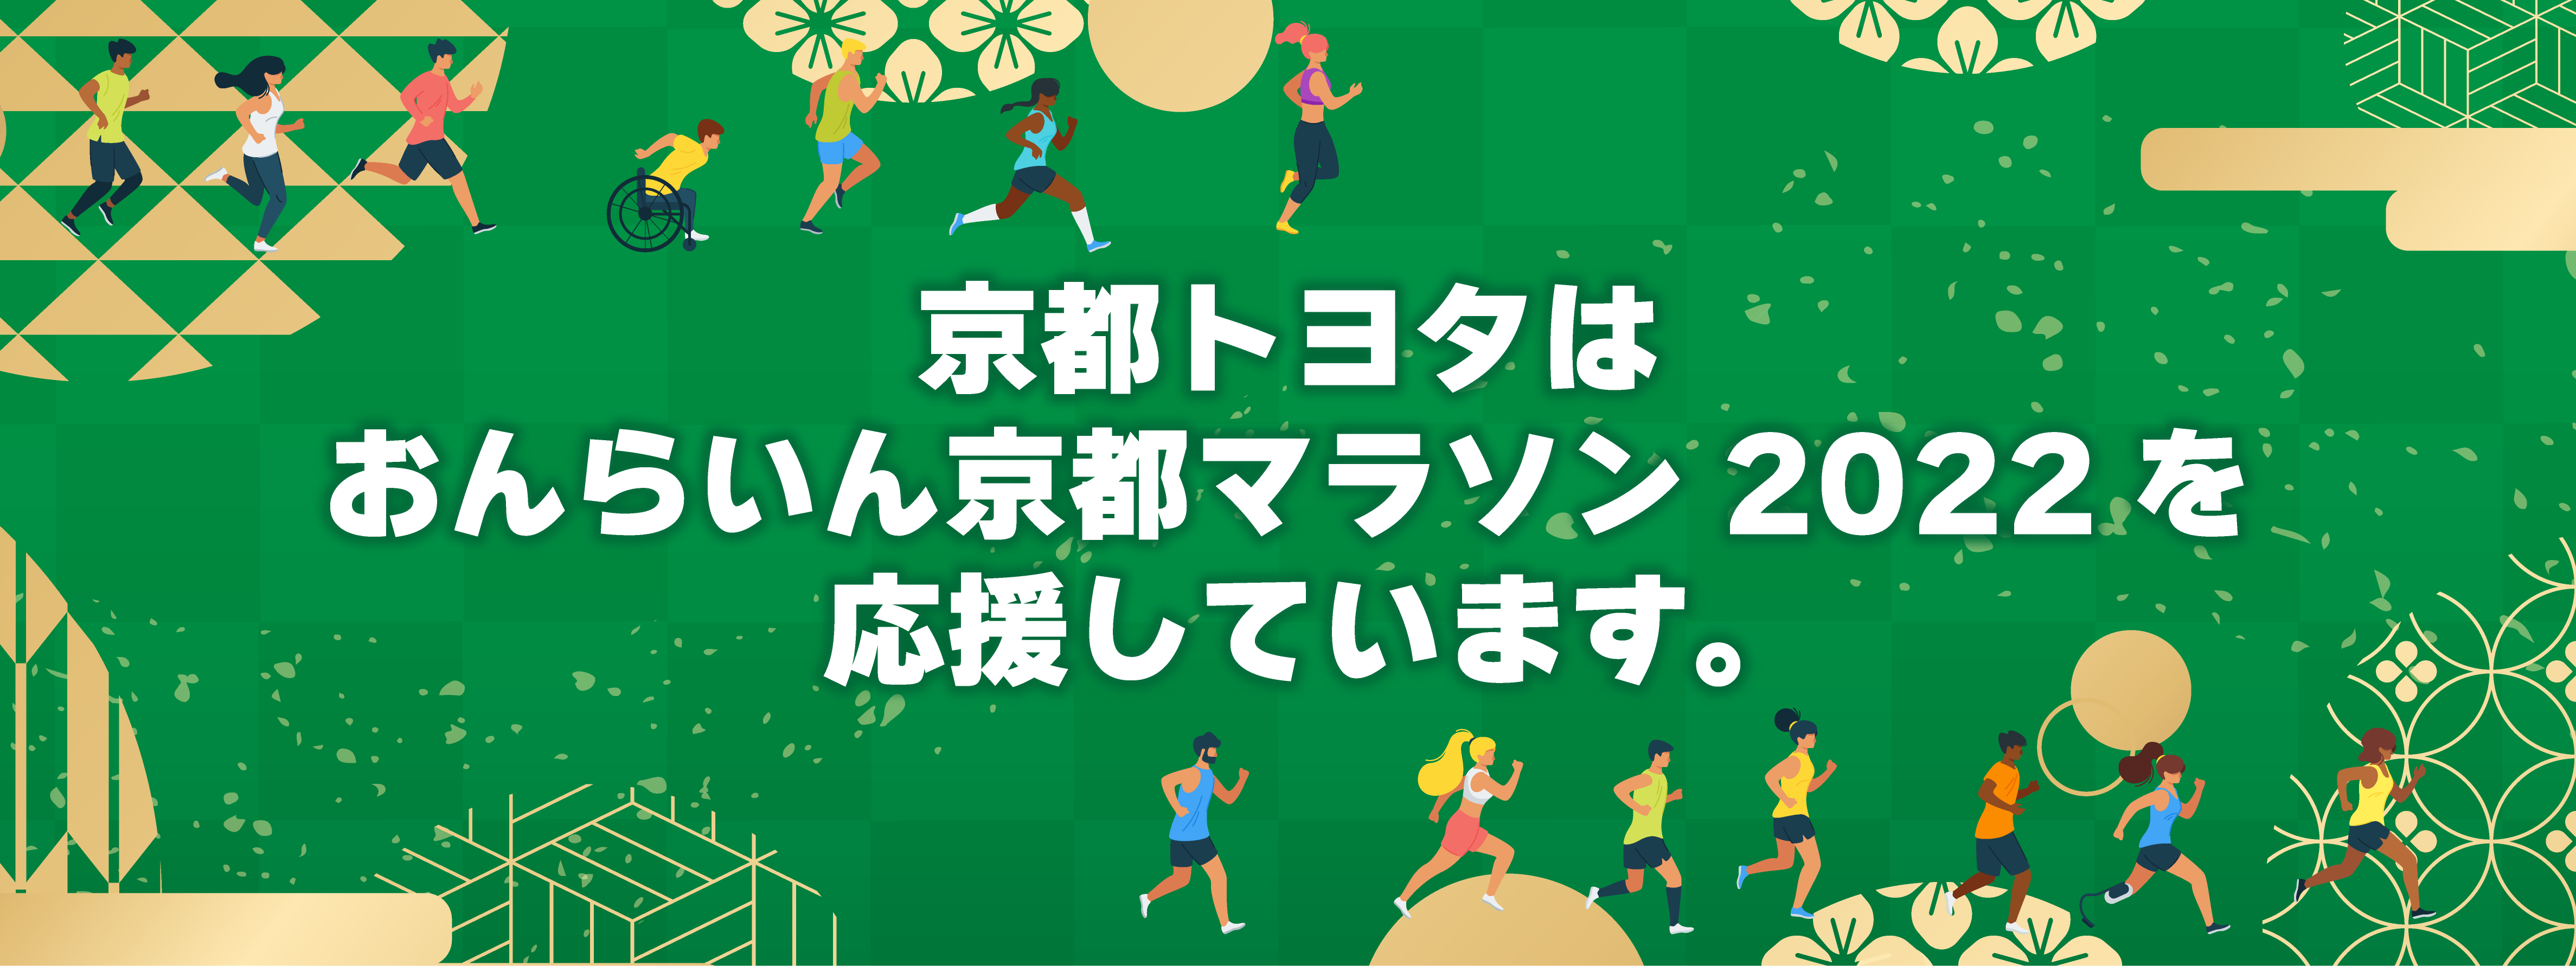 2201京都マラソン (1)